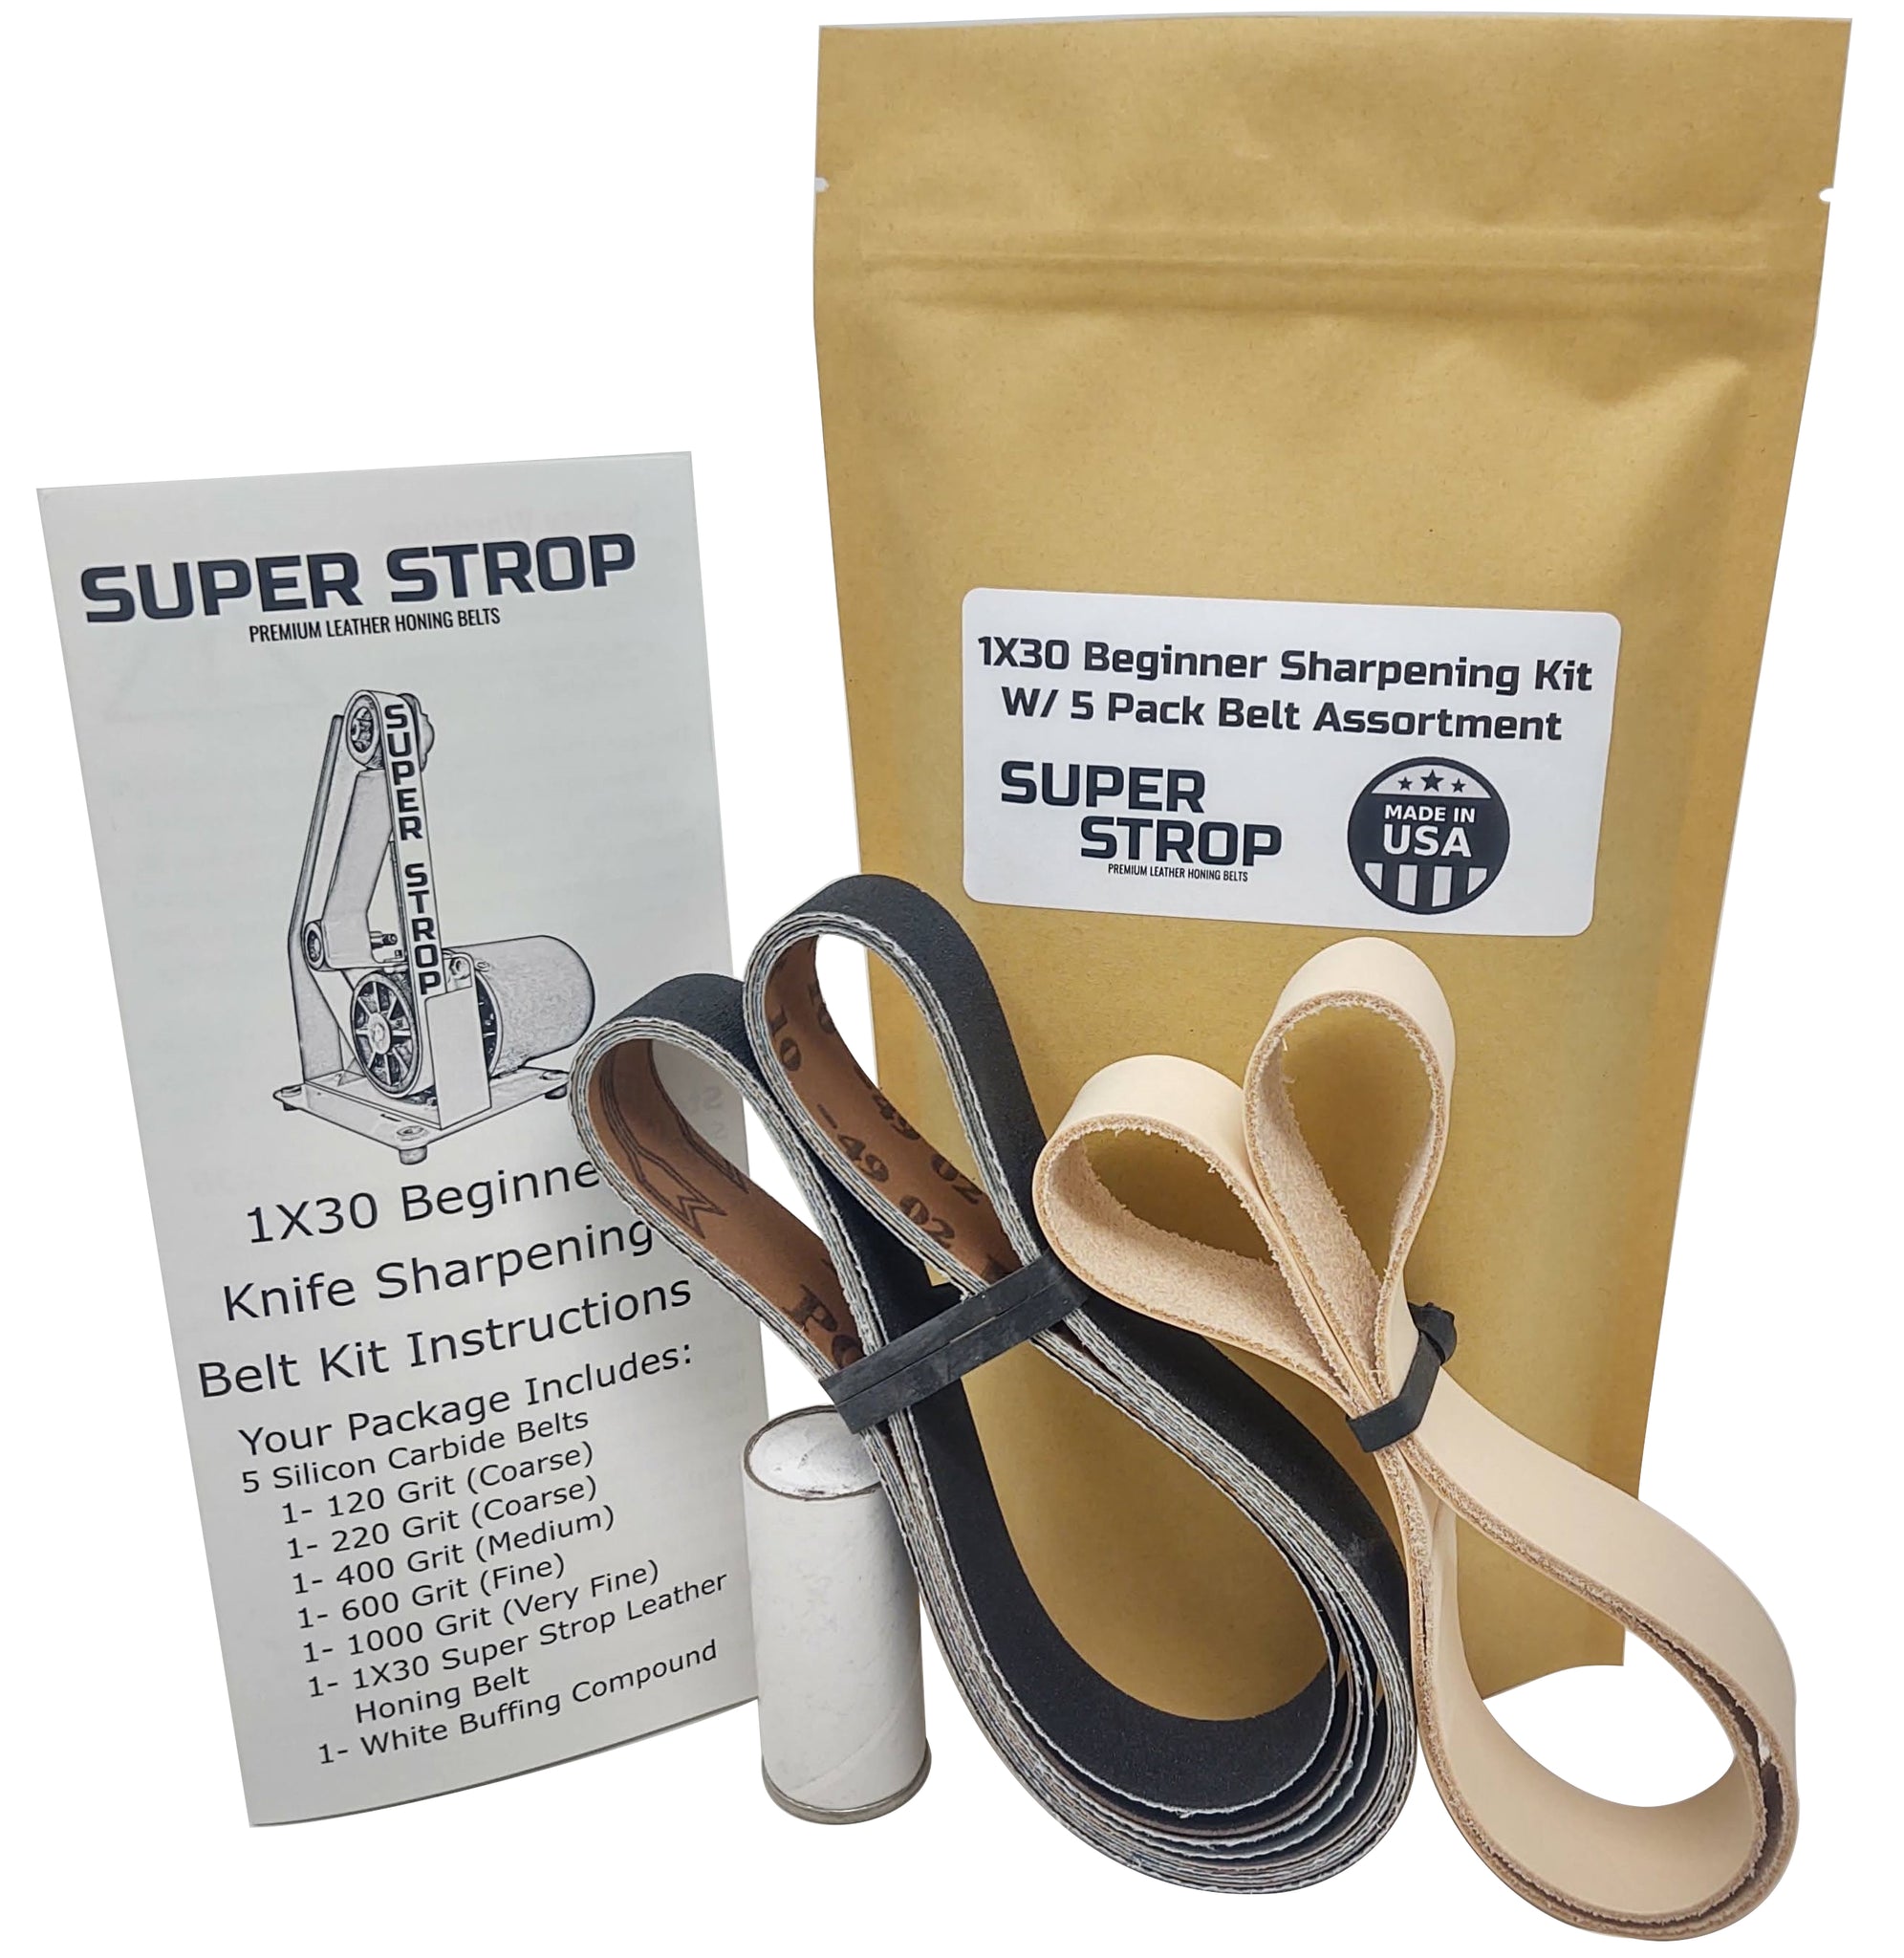 Super Strop Knife Sharpening Angle Guide Fits 1x30 Belt Sander with Assorted 5 Pack of 1x30 Sharpening Sanding Belts